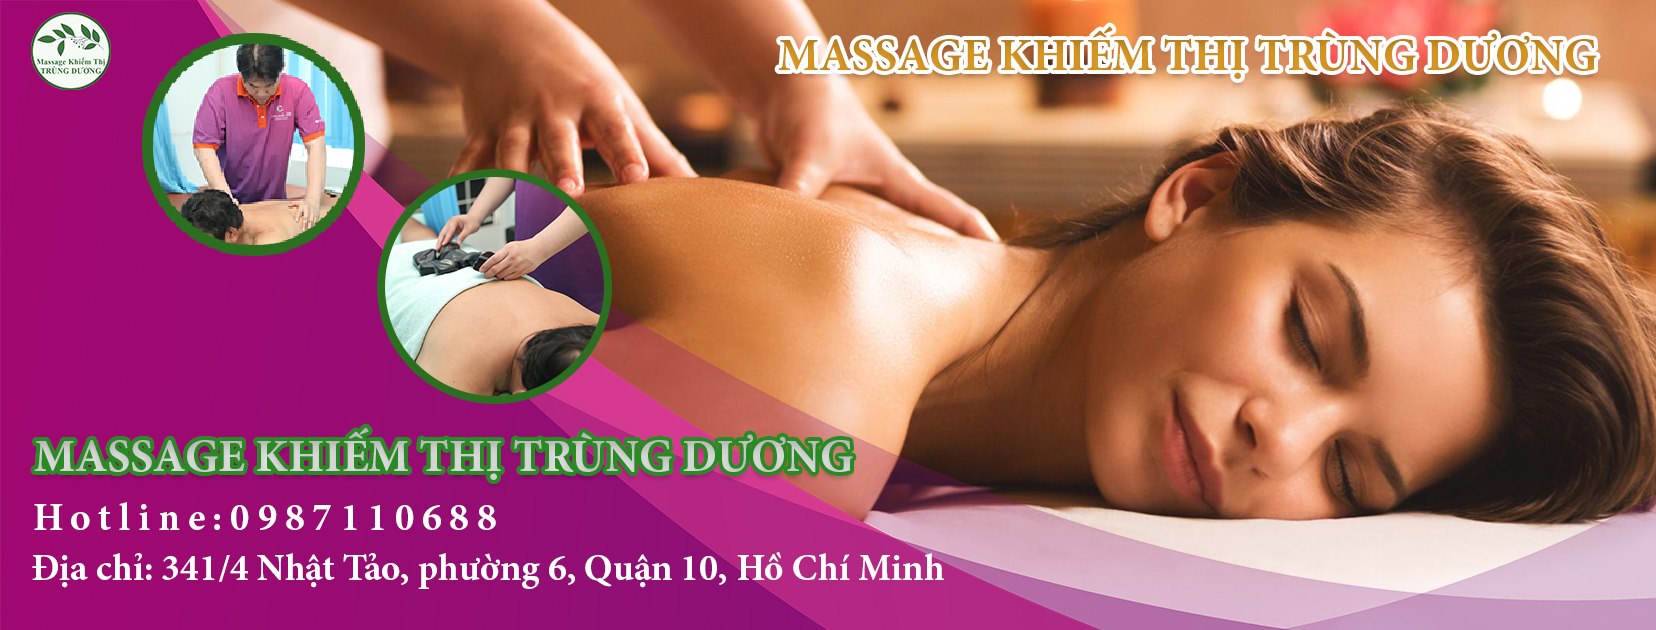 Massage Kiếm Thị Trùng Dương